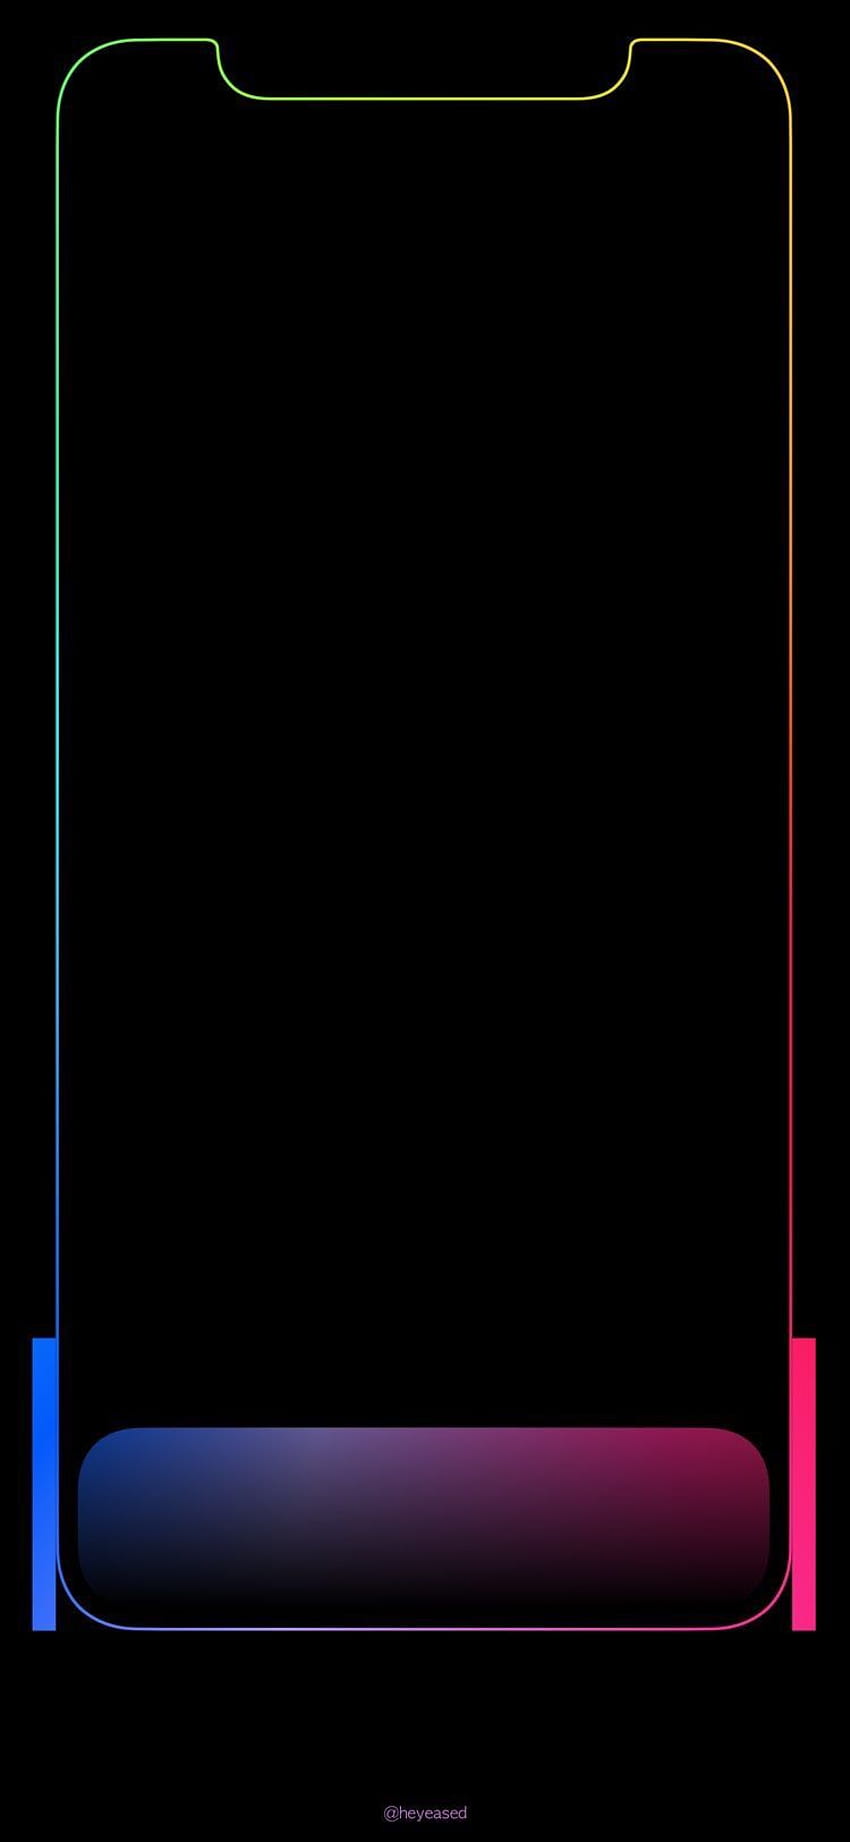 El hilo del iPhone X/Xs, borde del iPhone xs fondo de pantalla del teléfono